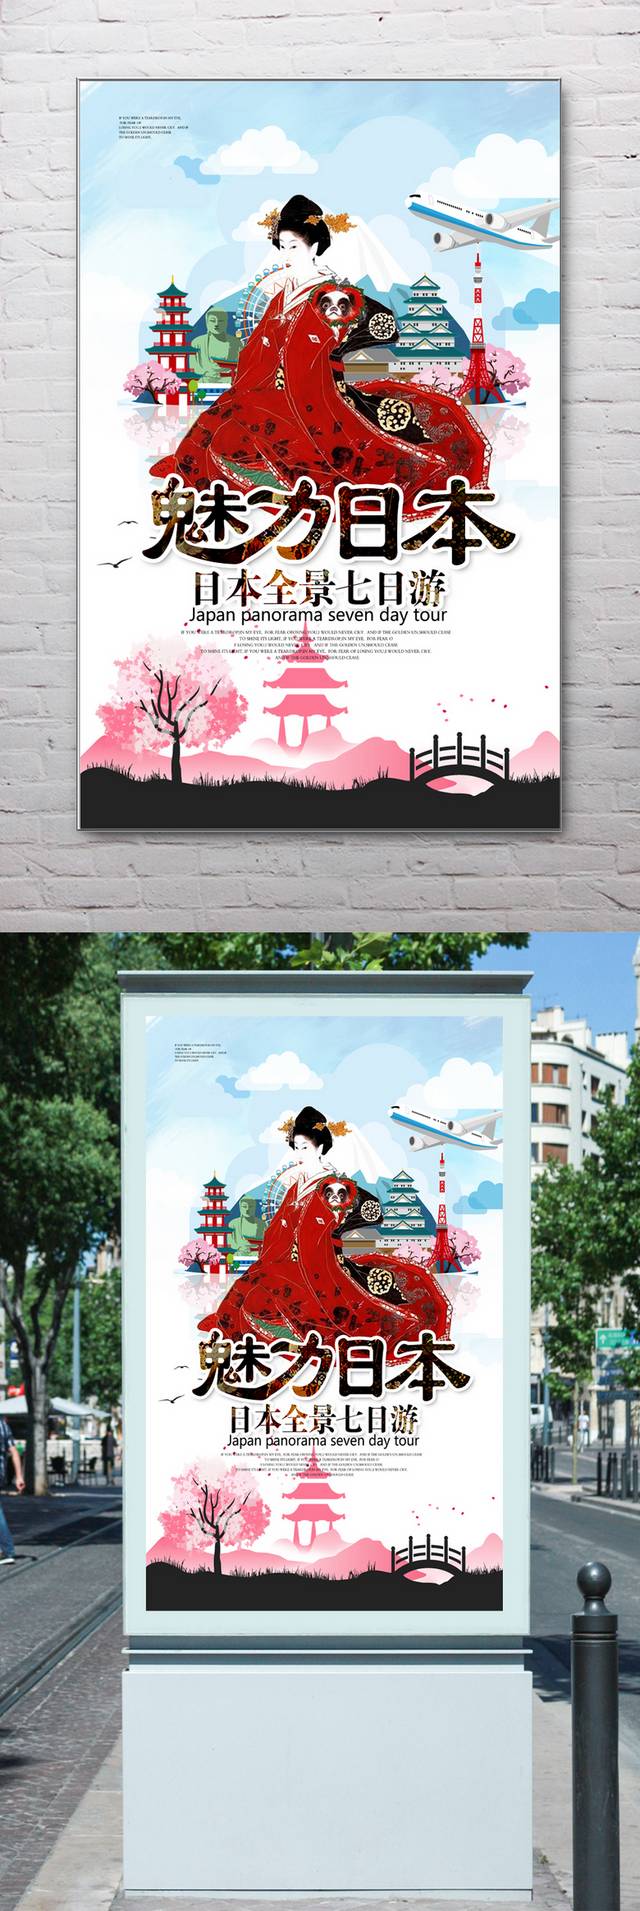 魅力日本旅游海报设计